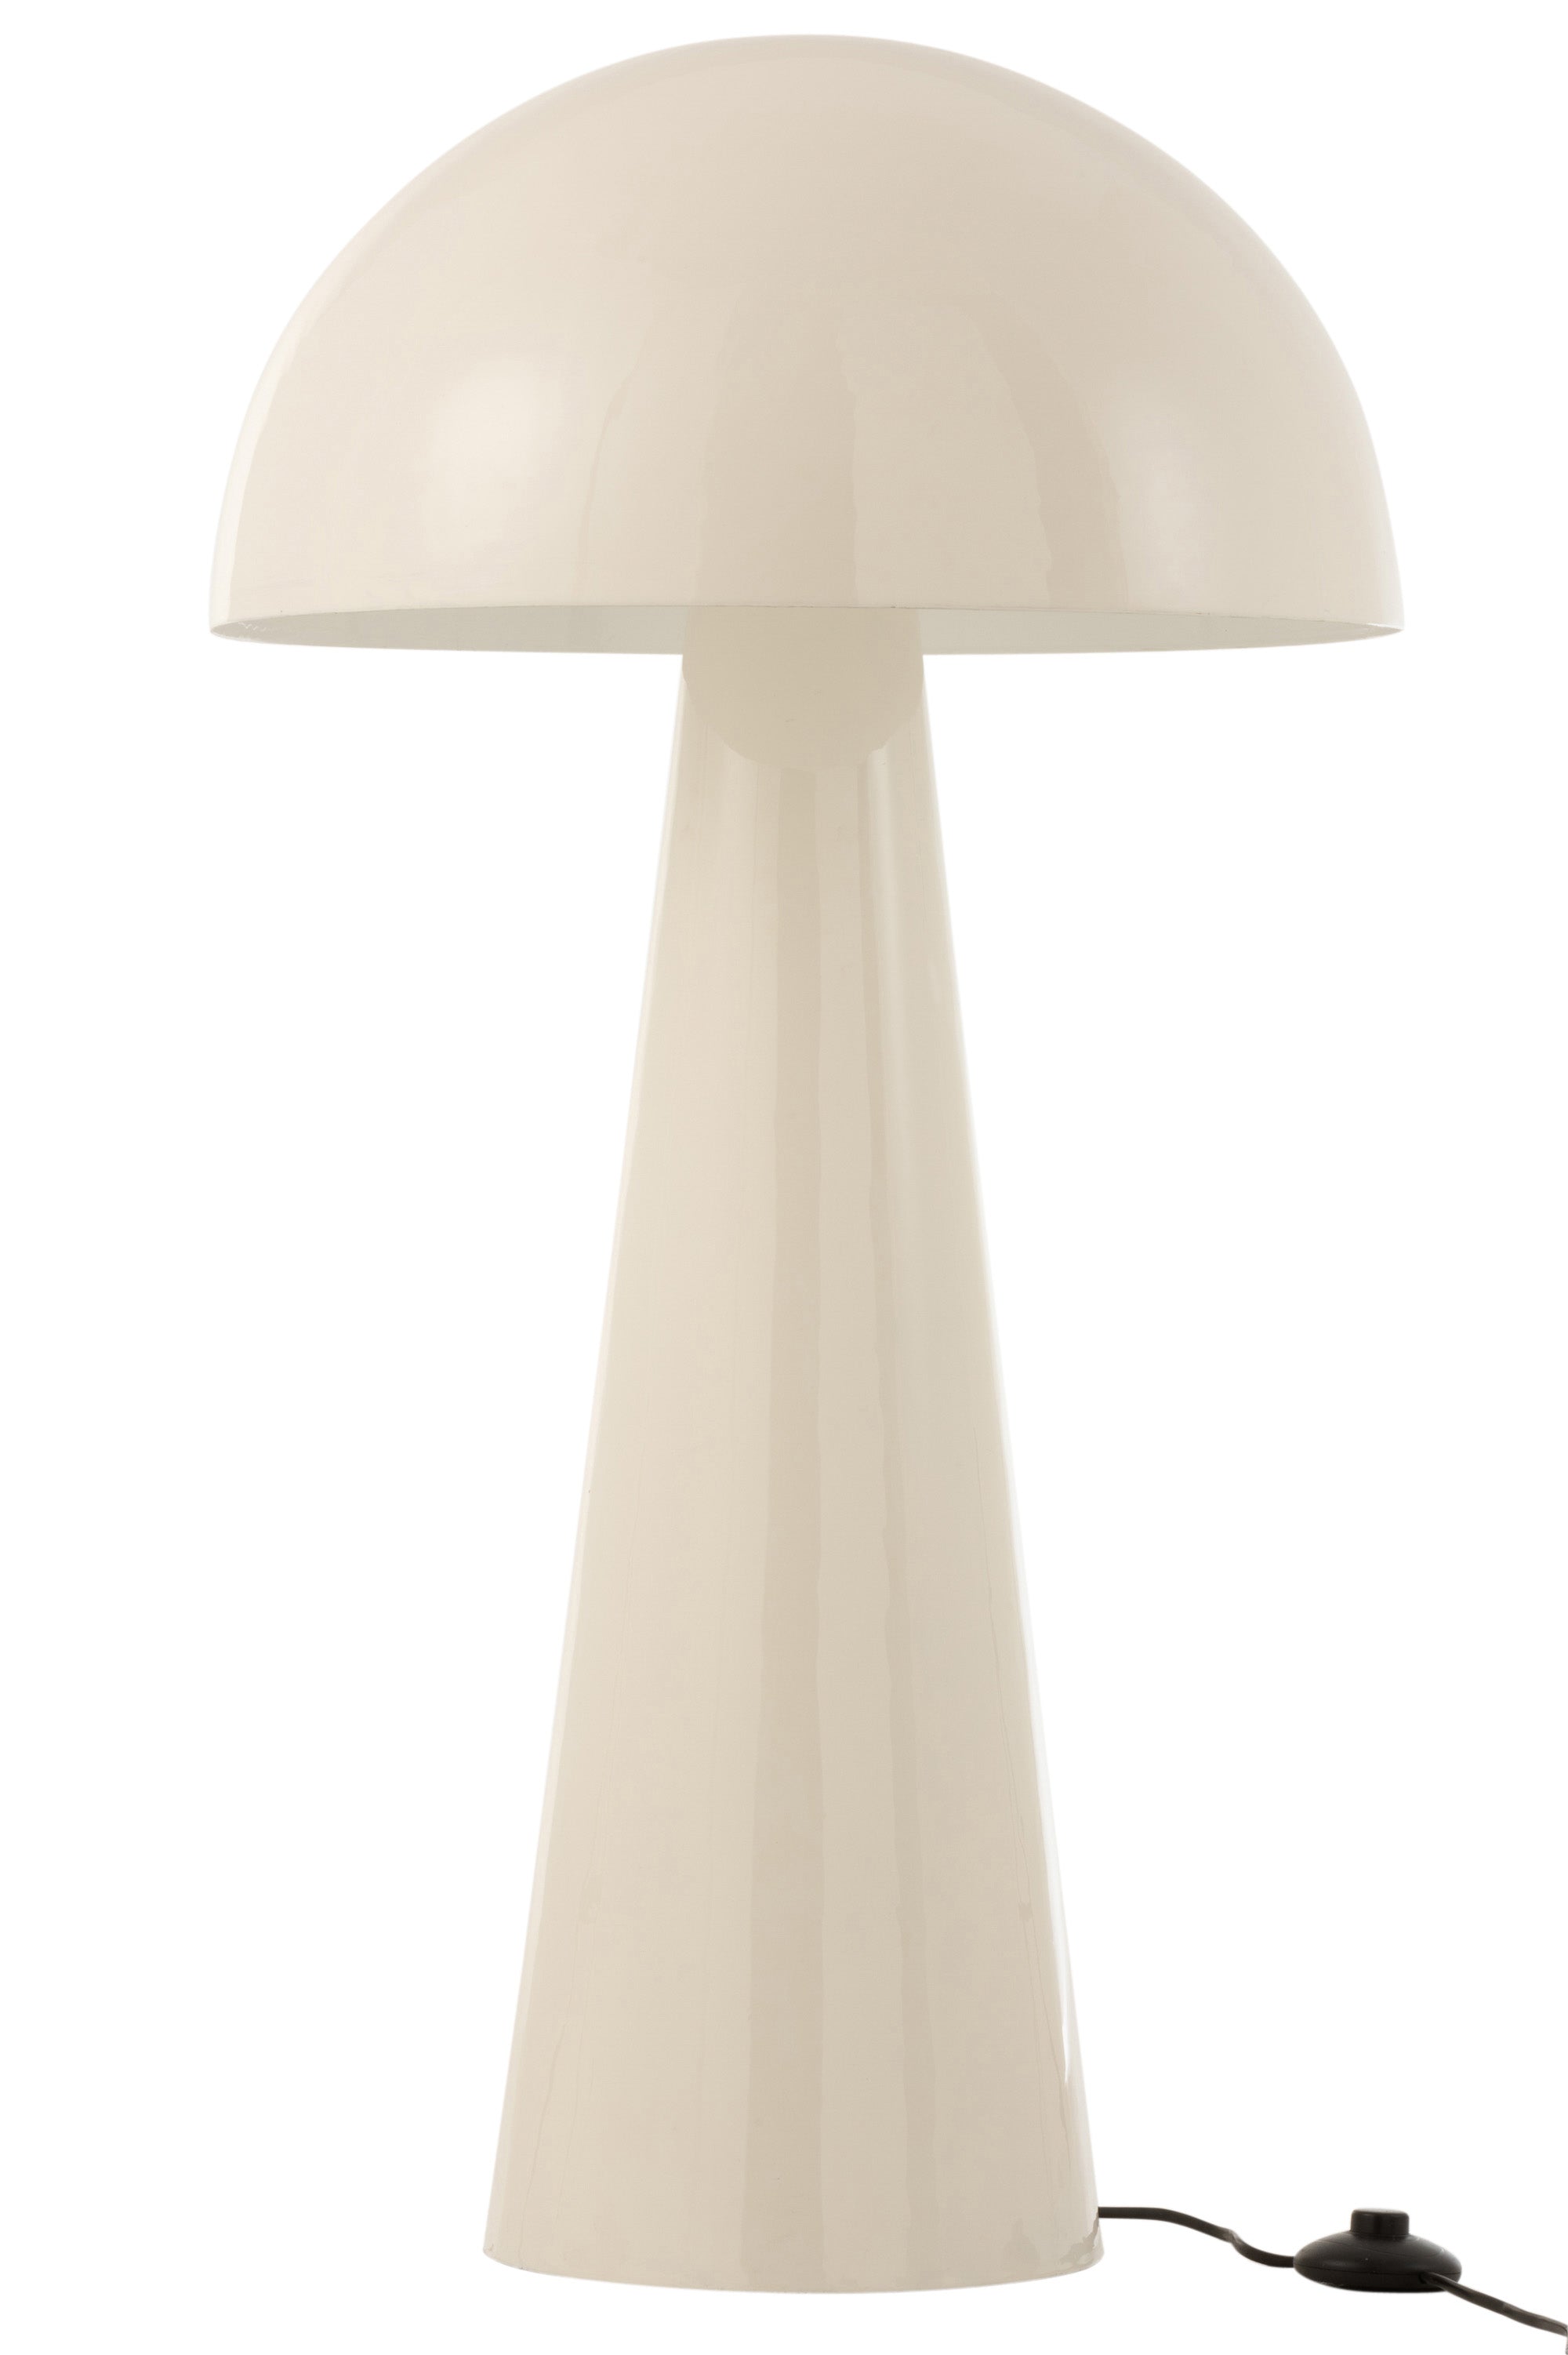 Lampe aus weiß glänzendem Metall (95 cm hoch) im Design eines Pilzes; auf einem konisch zulaufenden Sockel ruht ein pilzartiger Schirm; mit Fußchalter.